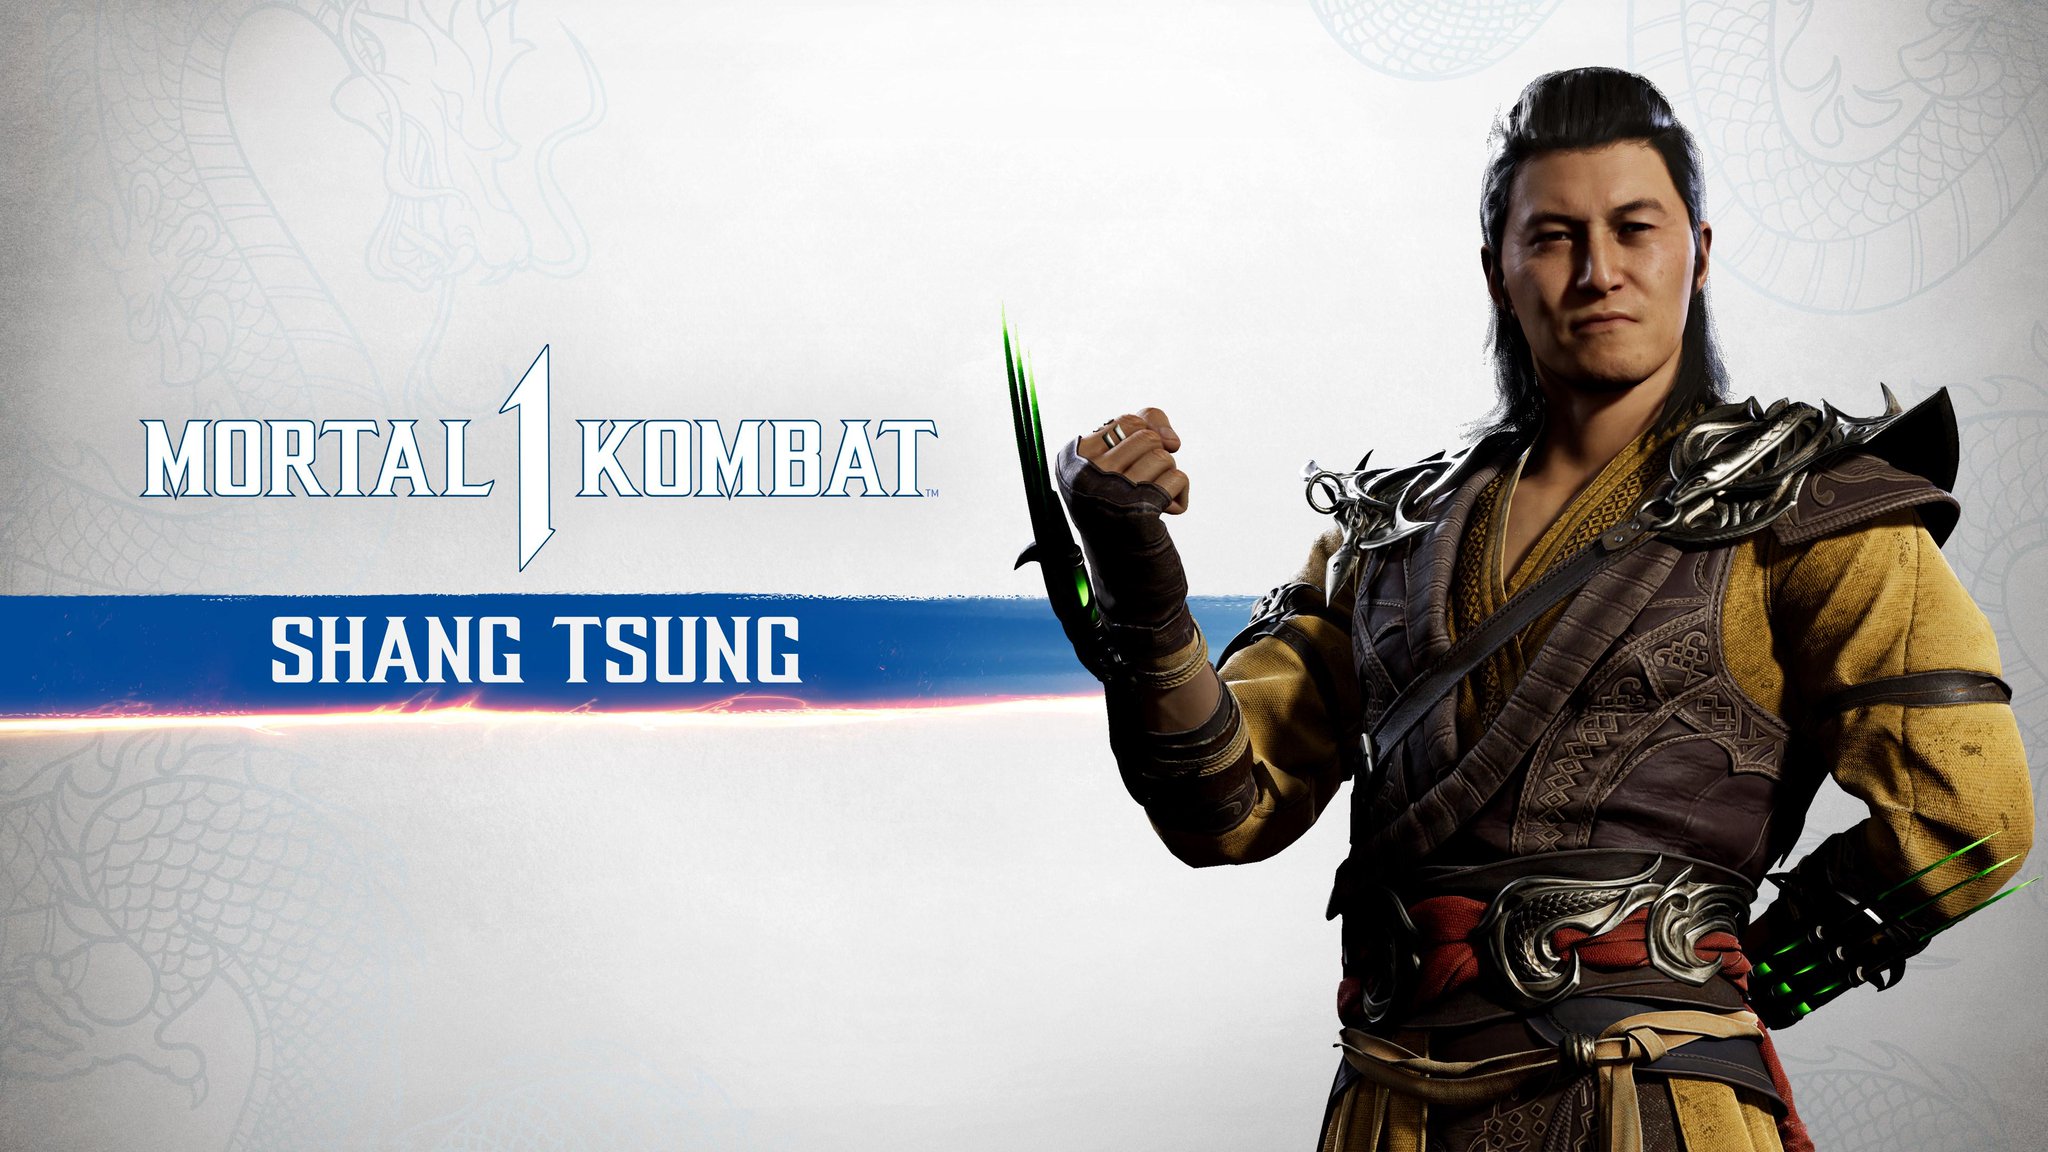 O final do Shang Tsung Mortal kombat 1 #ShangTsung #mortalkombat1